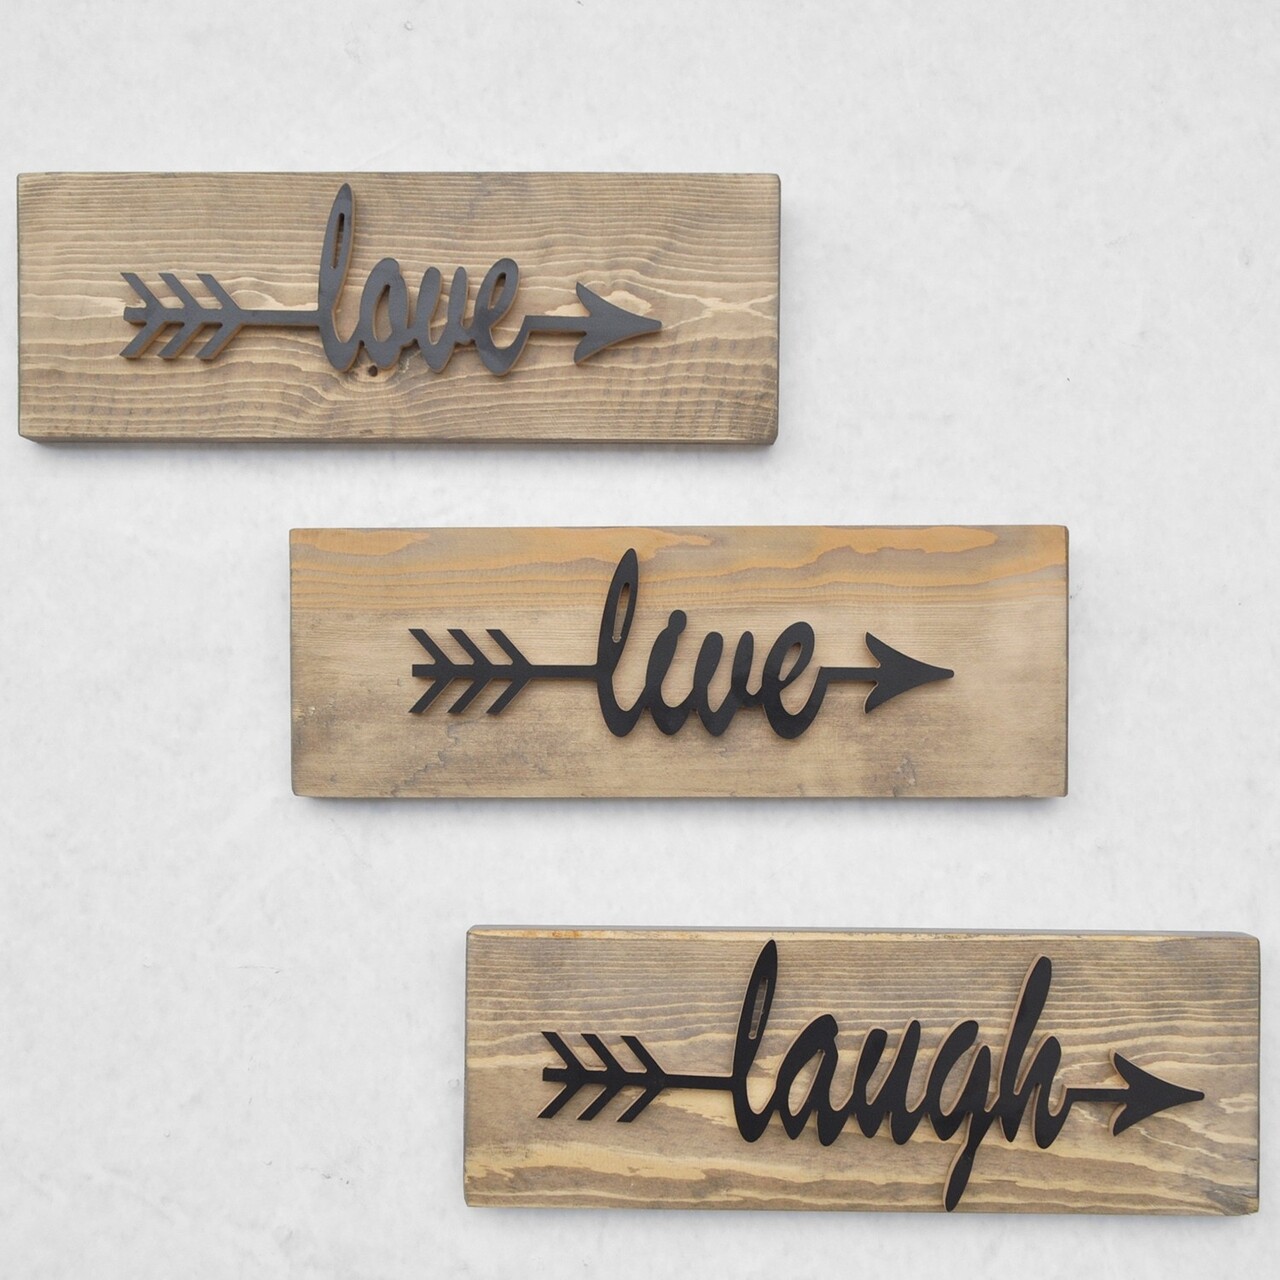 Love Live Laugh 3 Db Fali Dekoráció, Elvila Originals, 40x14 Cm, Handmade, Lucfenyő